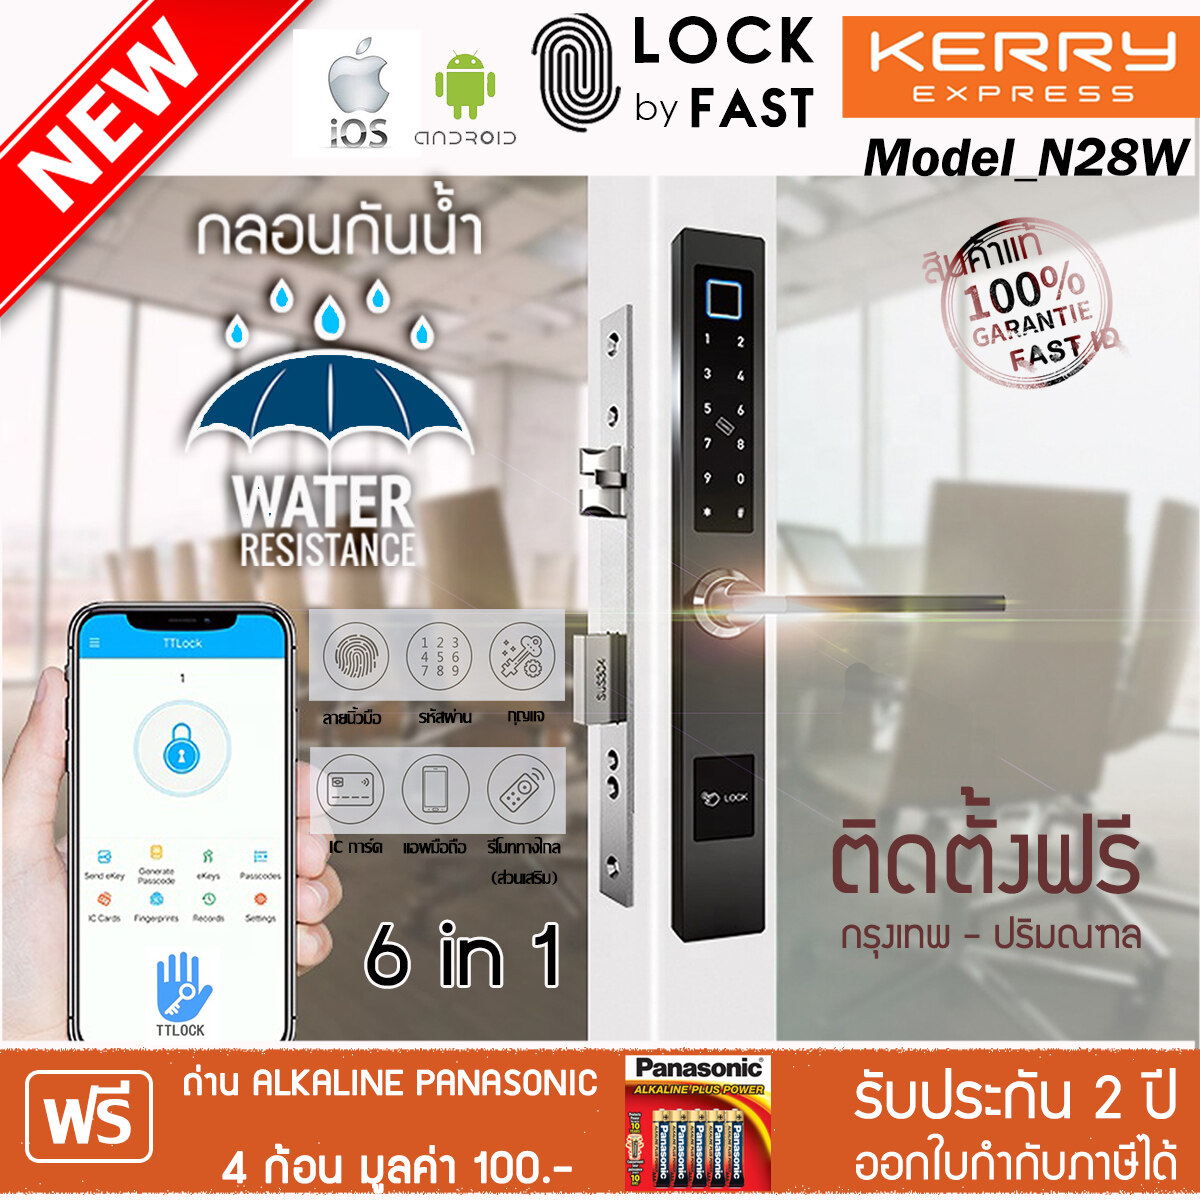 กันน้ำกันฝน กลอนประตูดิจิตอลกันน้ำ Digital Door Lock FAST ID รุ่น N28W สำหรับ ประตูบานเดี่ยว ประตูไม้  ปลดล็อค 6 ระบบ ใช้ App TTlock ติดตั้งฟรี